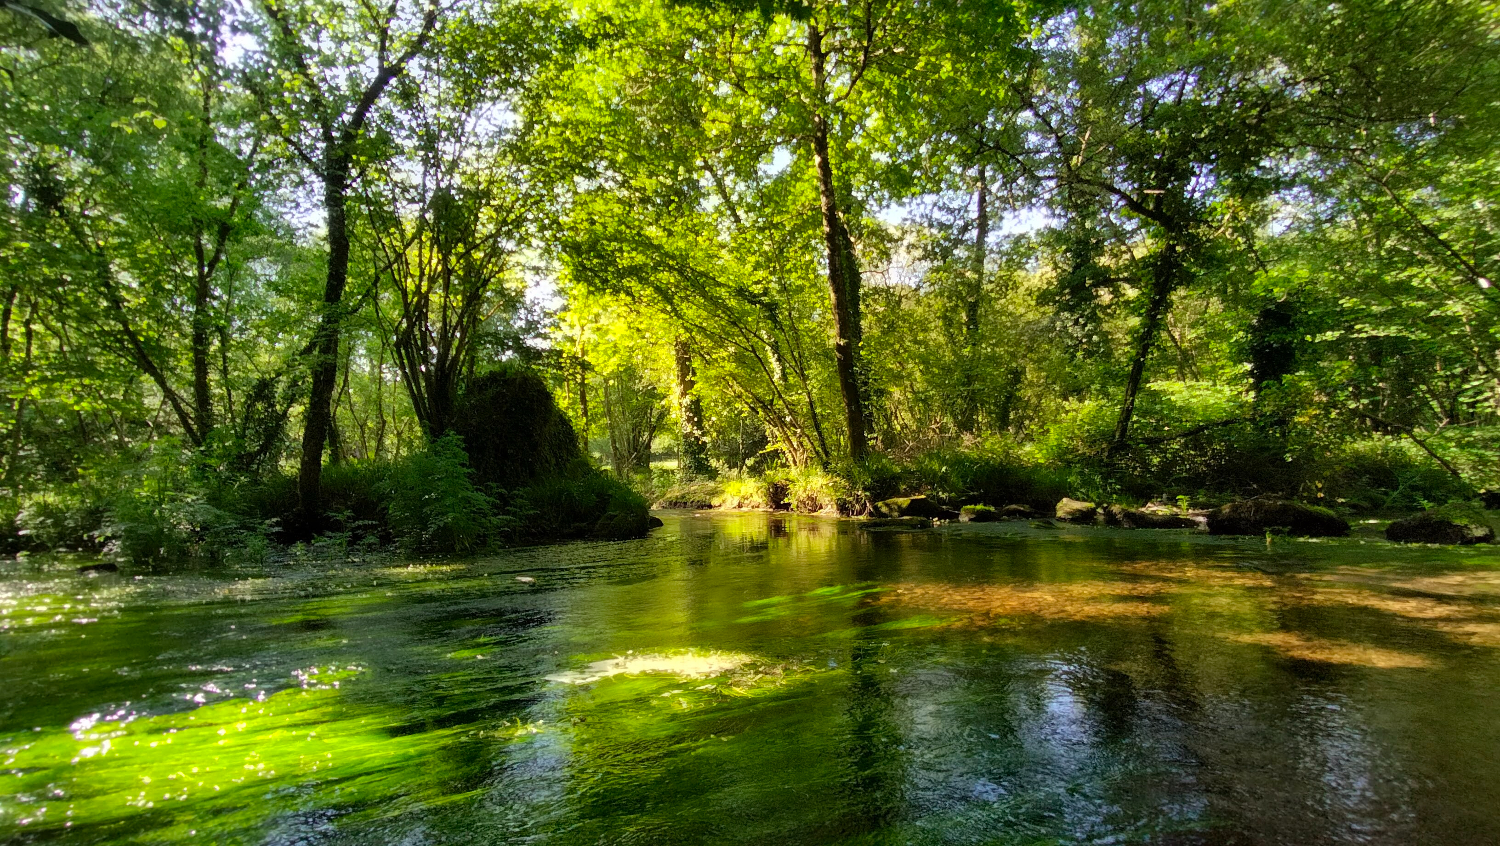 The river Élorn